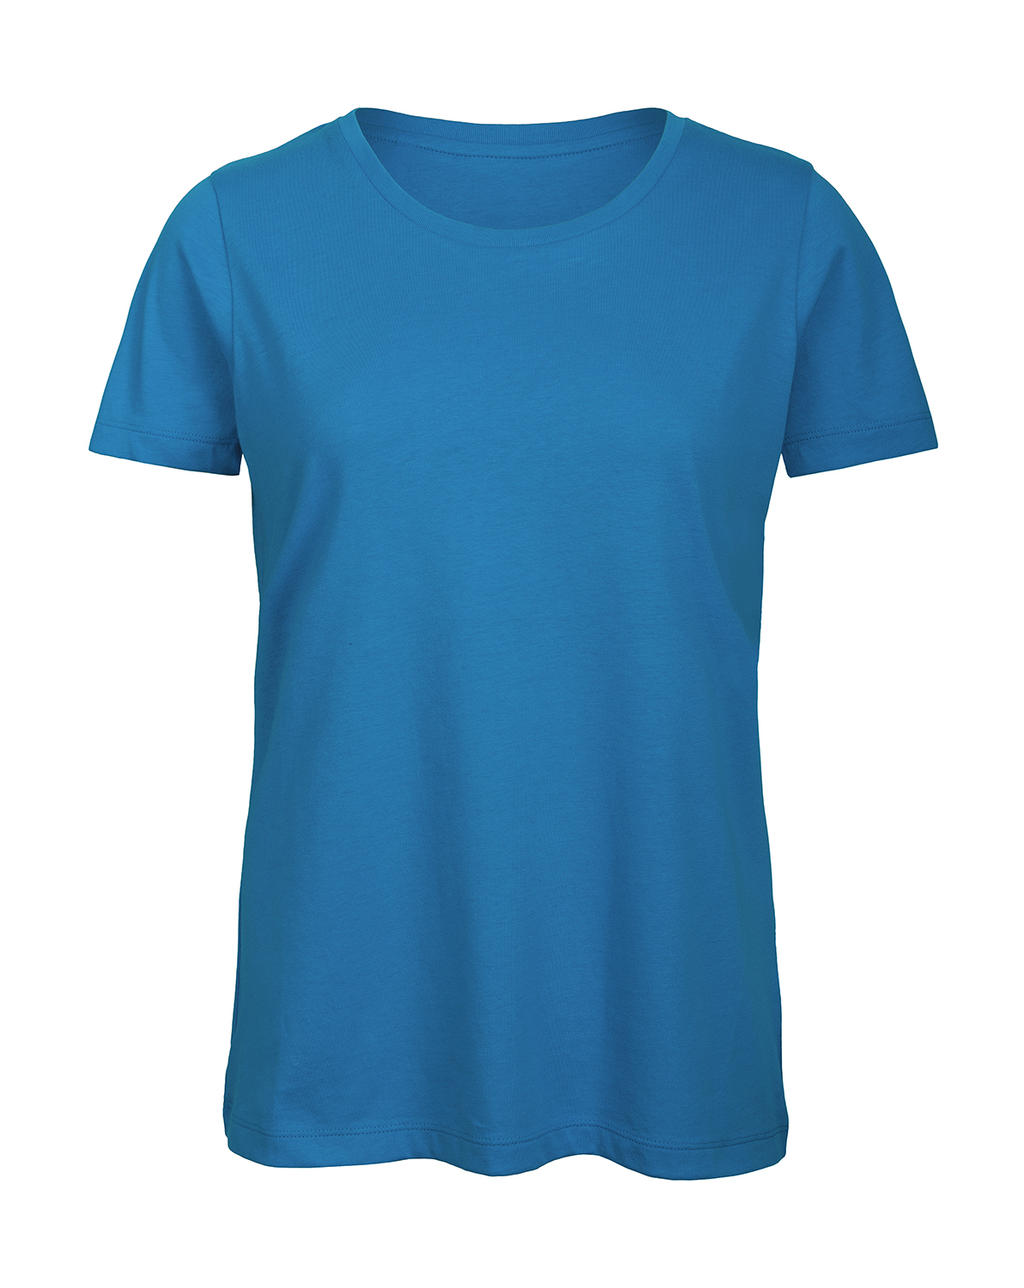 Tričko dámské B&C Jersey - světle modré, XS